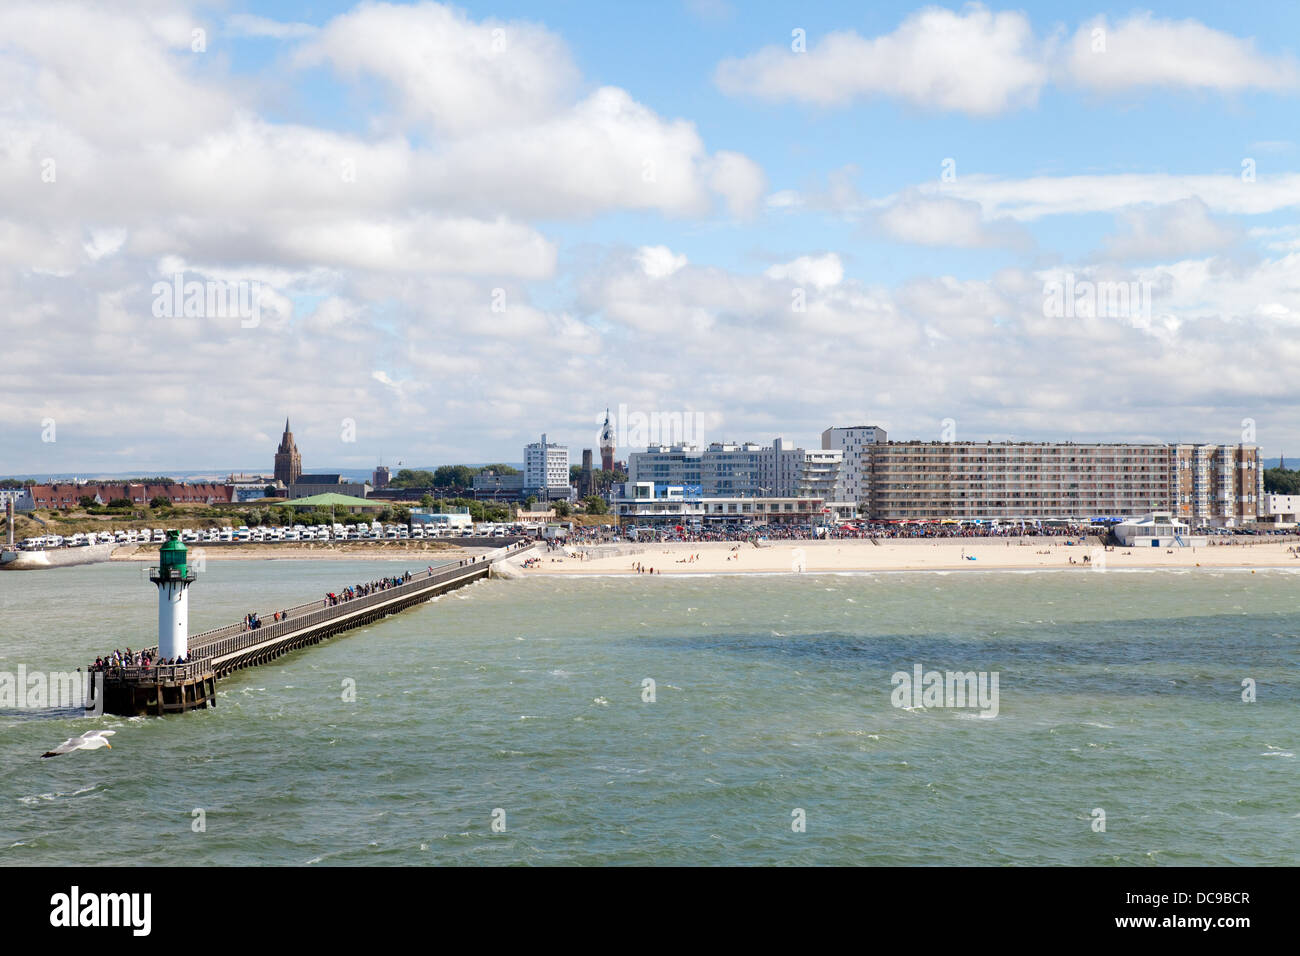 Une vue de la ville et de la plage de Calais, Picardie, France, vu depuis le ferry transmanche Banque D'Images